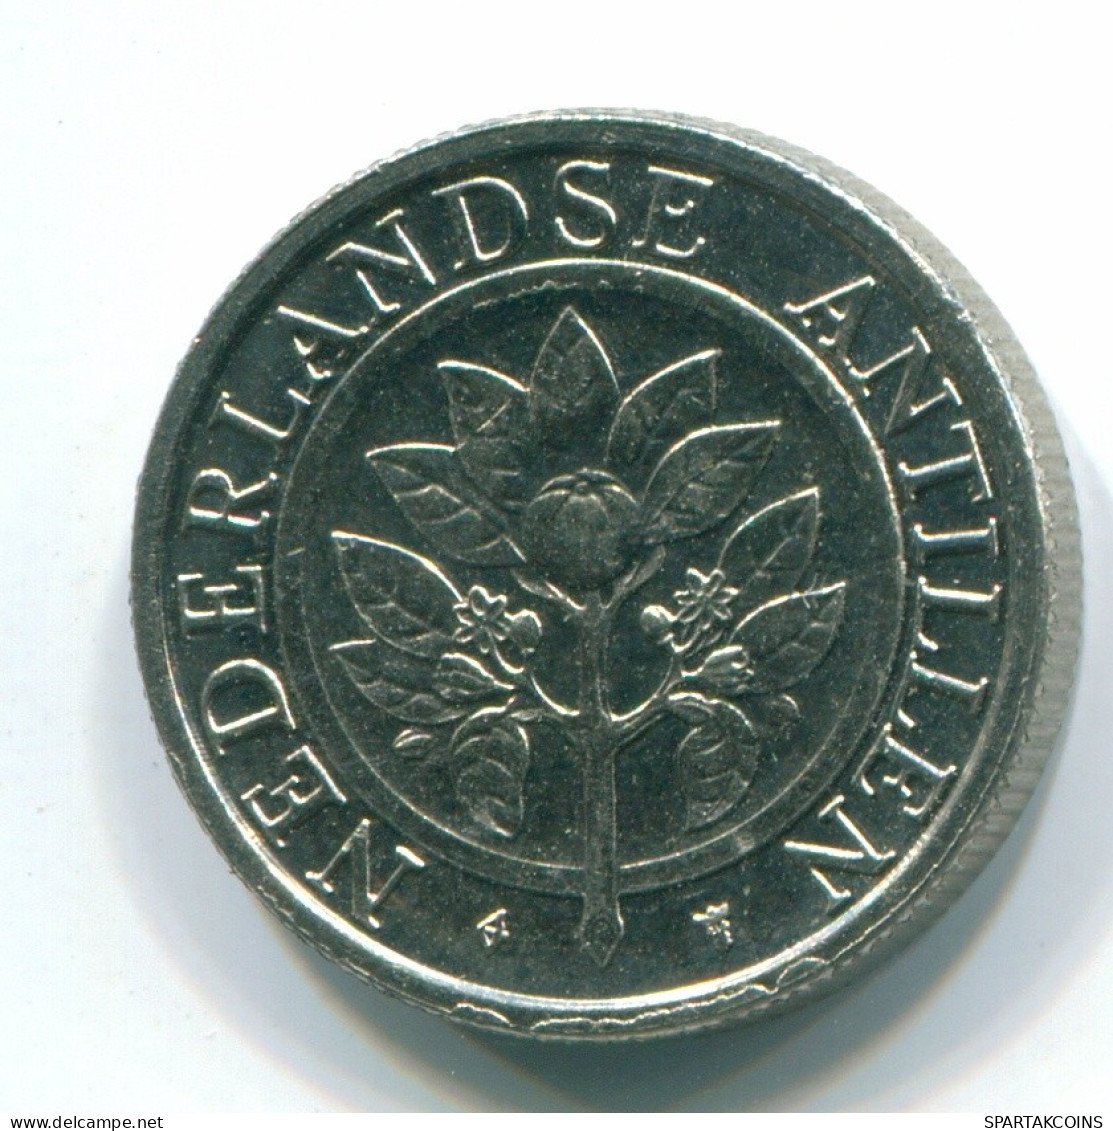 10 CENTS 1989 NIEDERLÄNDISCHE ANTILLEN Nickel Koloniale Münze #S11309.D.A - Antilles Néerlandaises